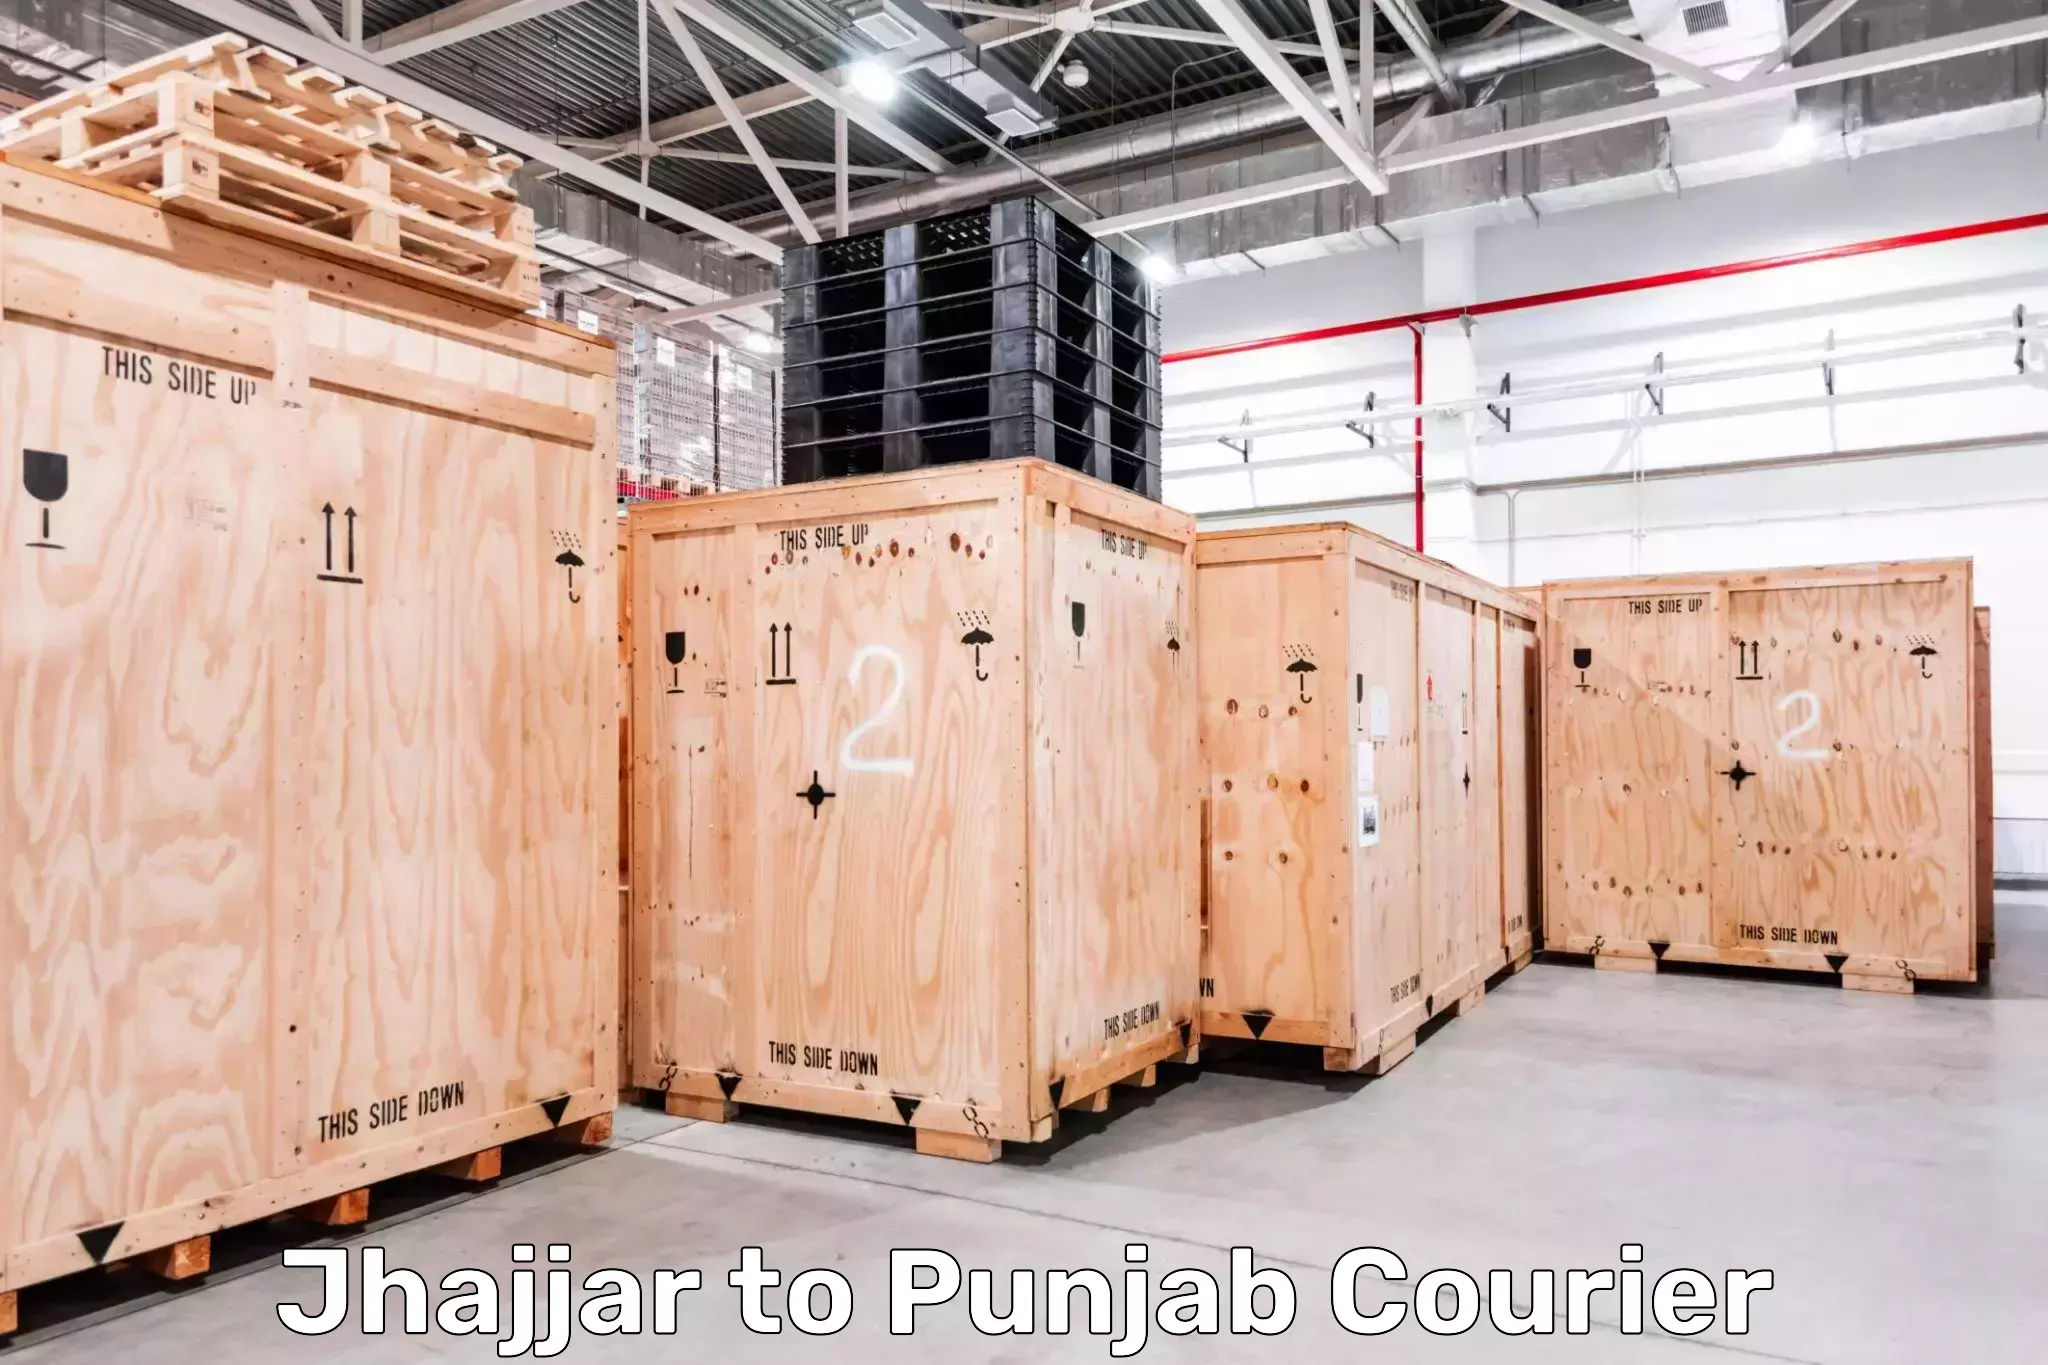 High-capacity parcel service Jhajjar to Goindwal Sahib